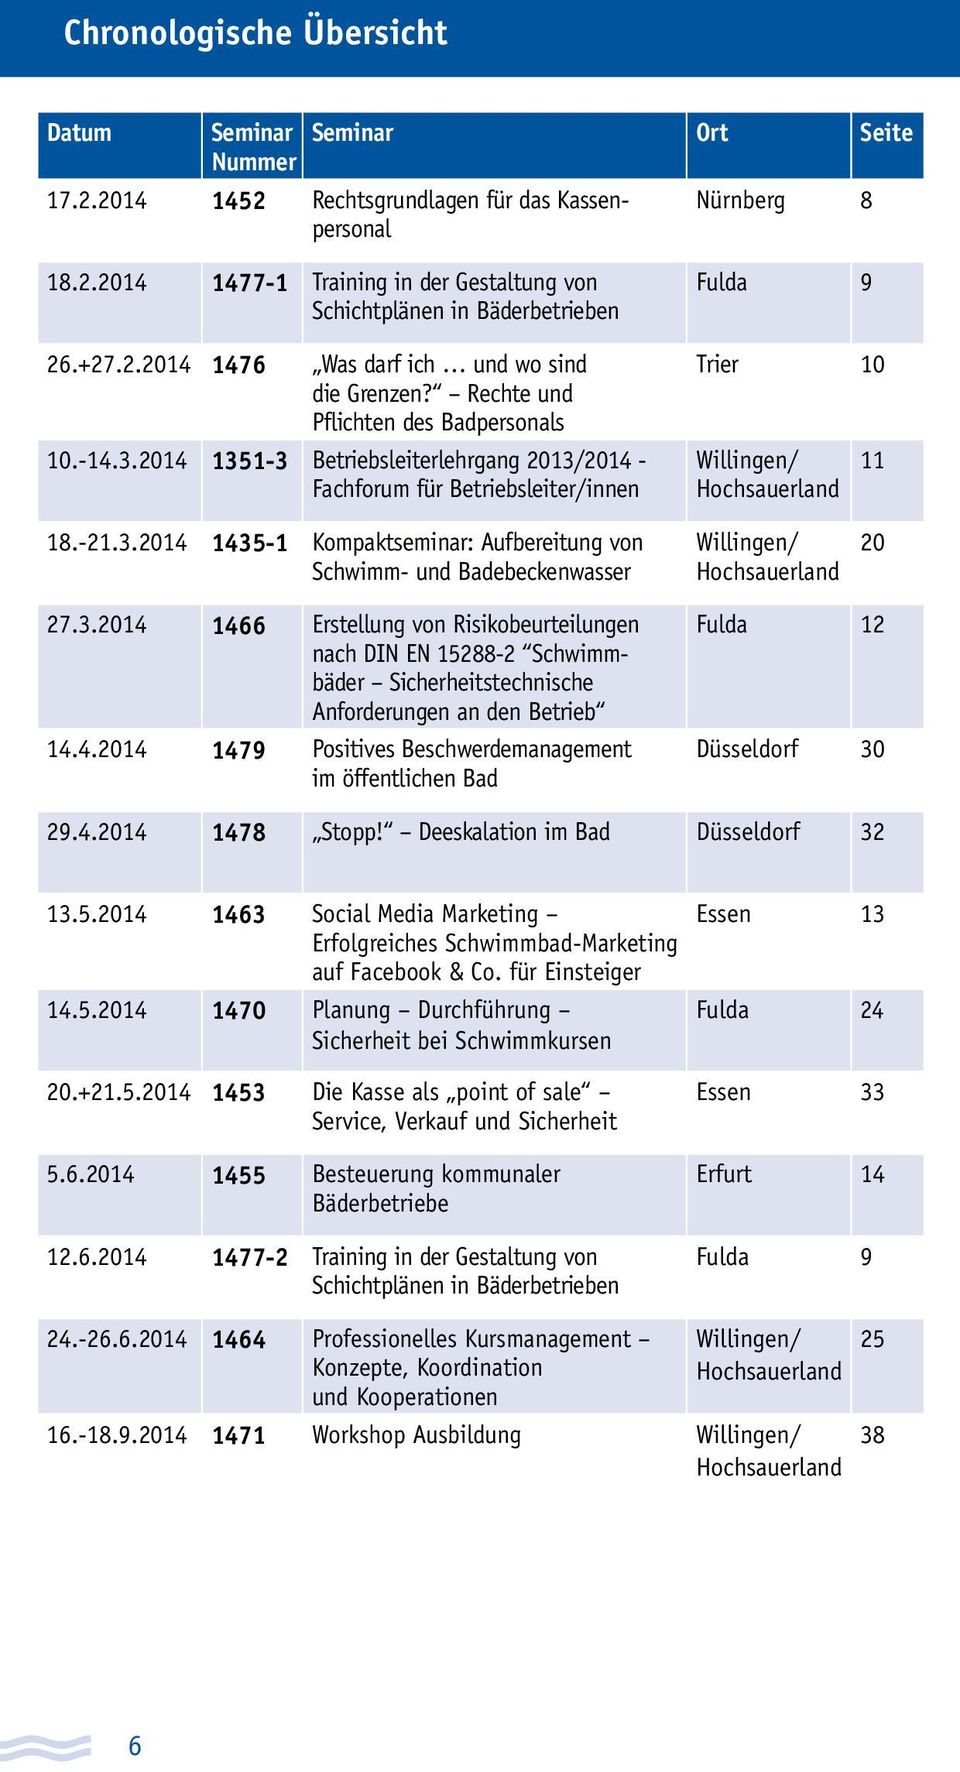 2014 1351-3 Betriebsleiterlehrgang 2013/2014 - Fachforum für Betriebsleiter/innen Fulda 9 Trier 10 Willingen/ Hochsauerland 11 18.-21.3.2014 1435-1 Kompaktseminar: Aufbereitung von Schwimm- und Badebeckenwasser Willingen/ Hochsauerland 20 27.